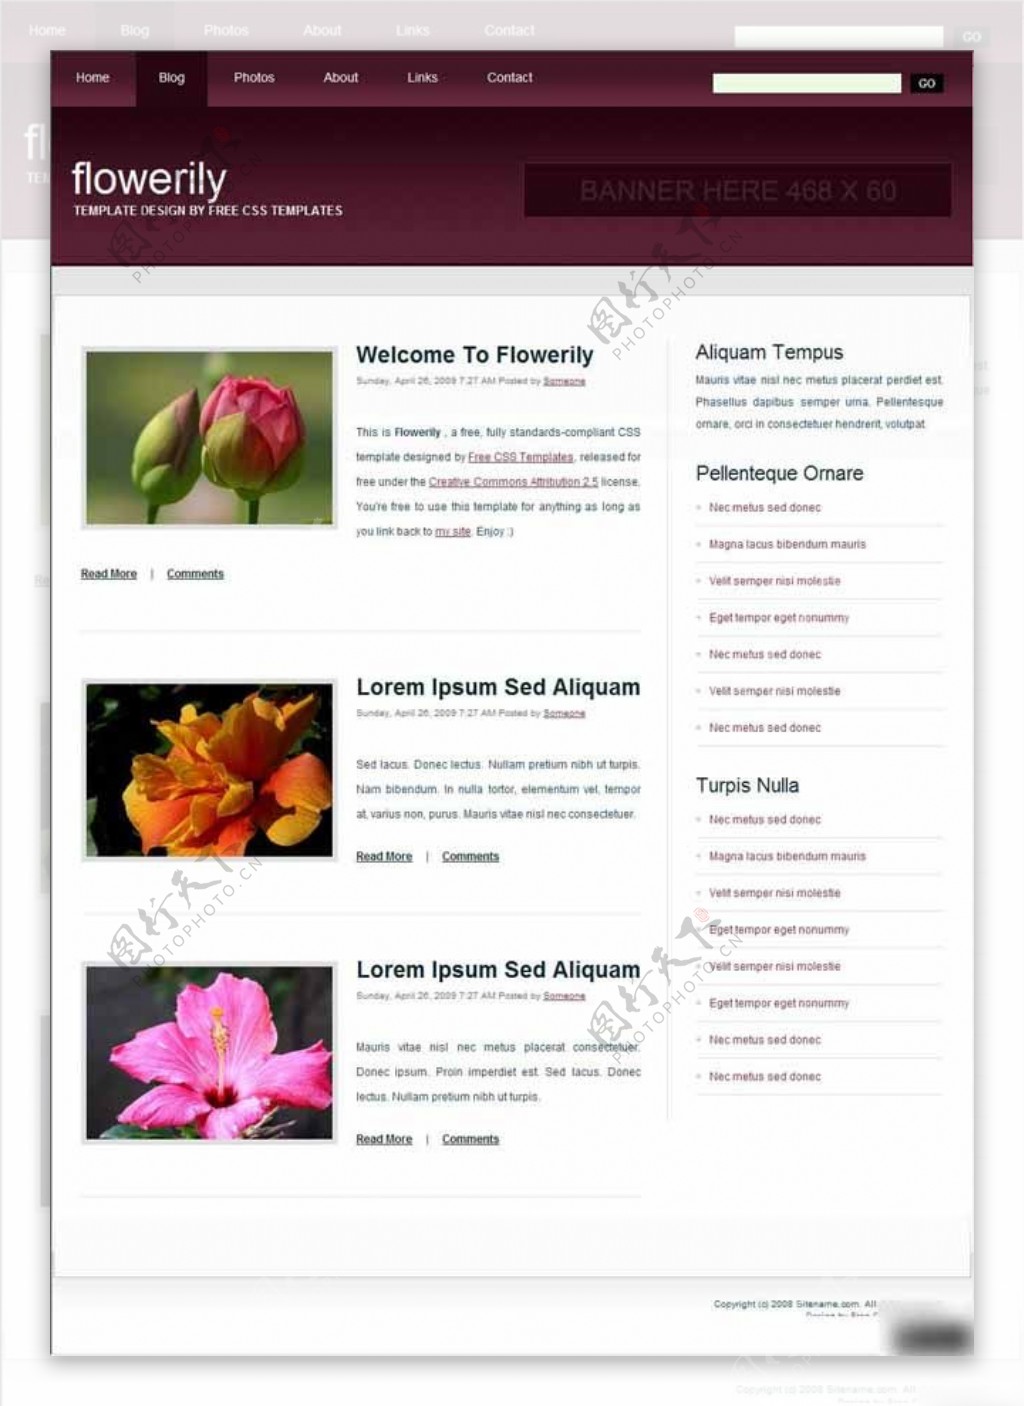 花类介绍信息网页模板